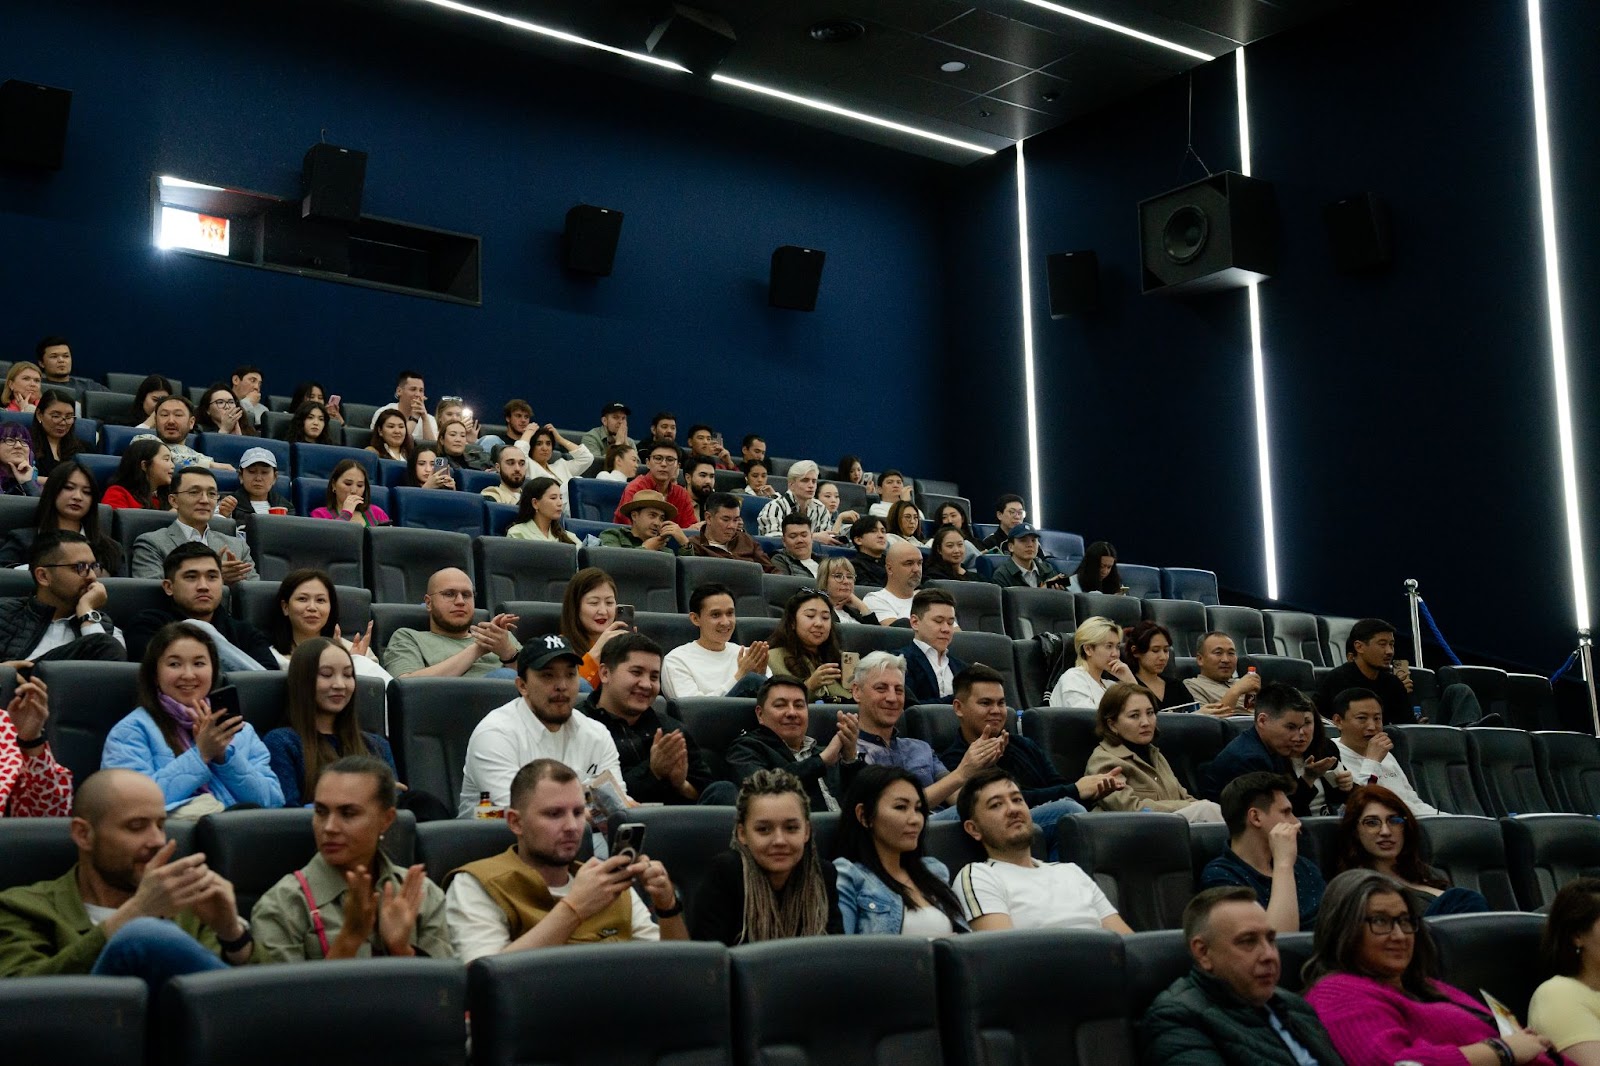 Кинопоиск в Казахстане: новый фильм Гая Ричи выходит в кинопрокат